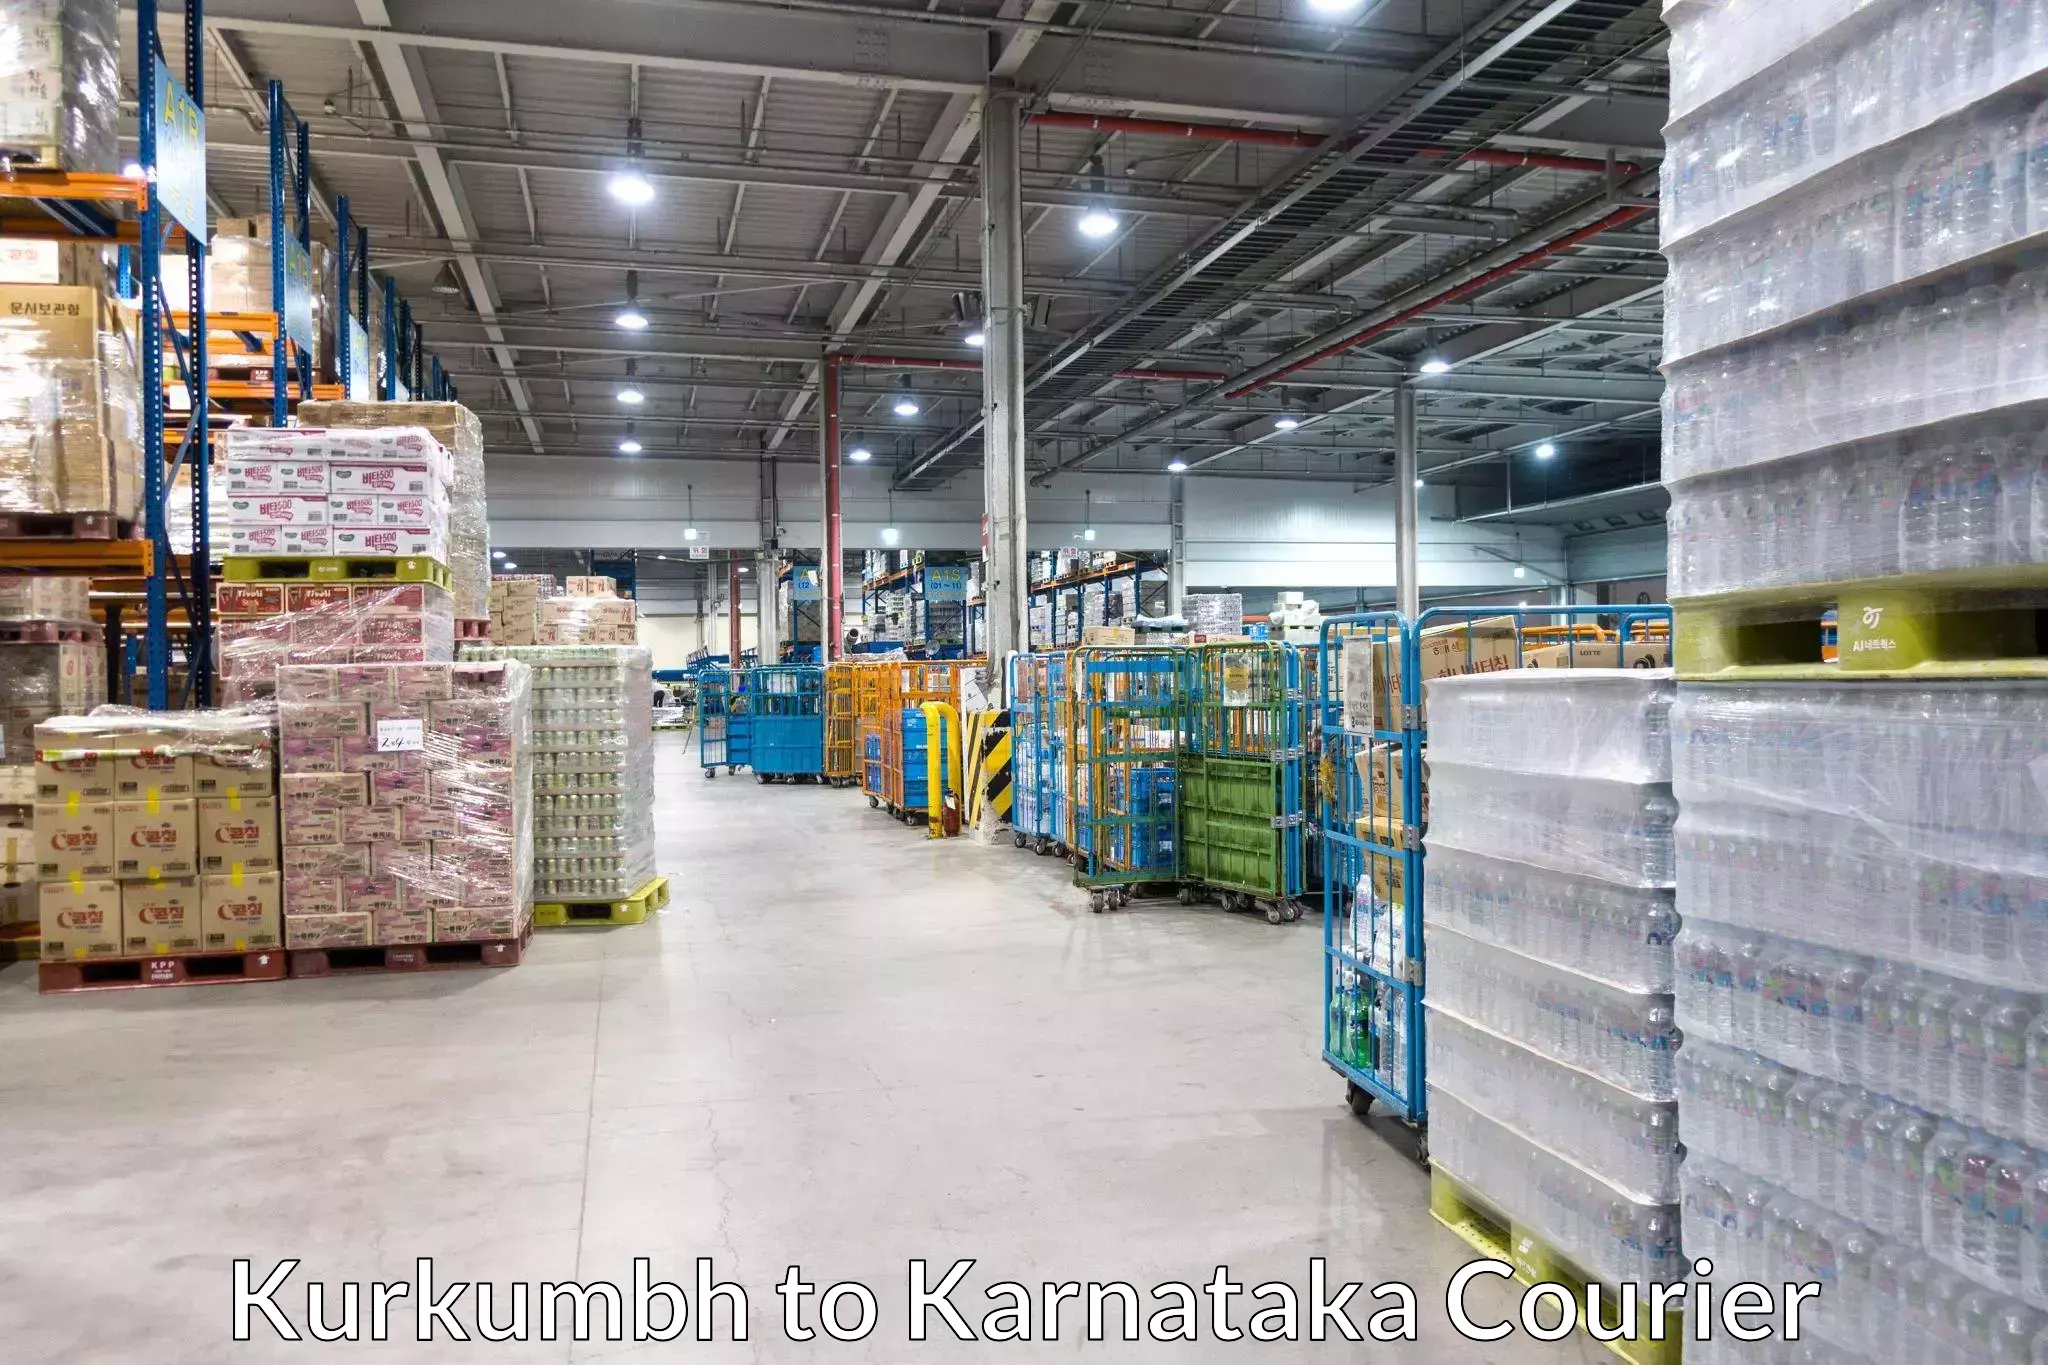 Courier service comparison Kurkumbh to Yellare